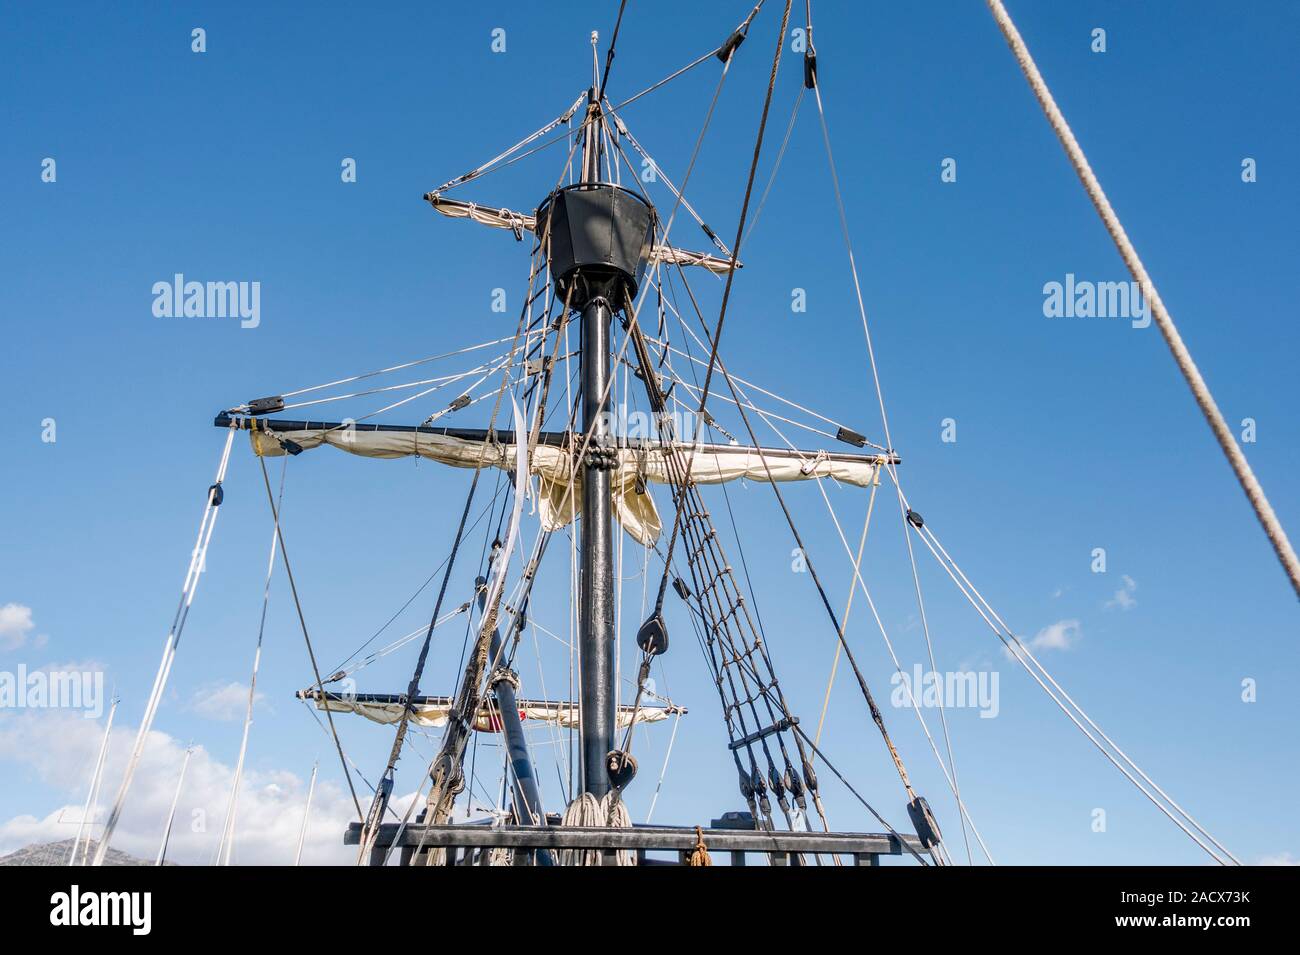 Crows Nest der alten spanischen Galeone, Nao Victoria, Schiff, Schiff, Boot aus dem 16. Jahrhundert wird von Menschen besucht, der Hafen von Fuengirola. Spanien. Stockfoto